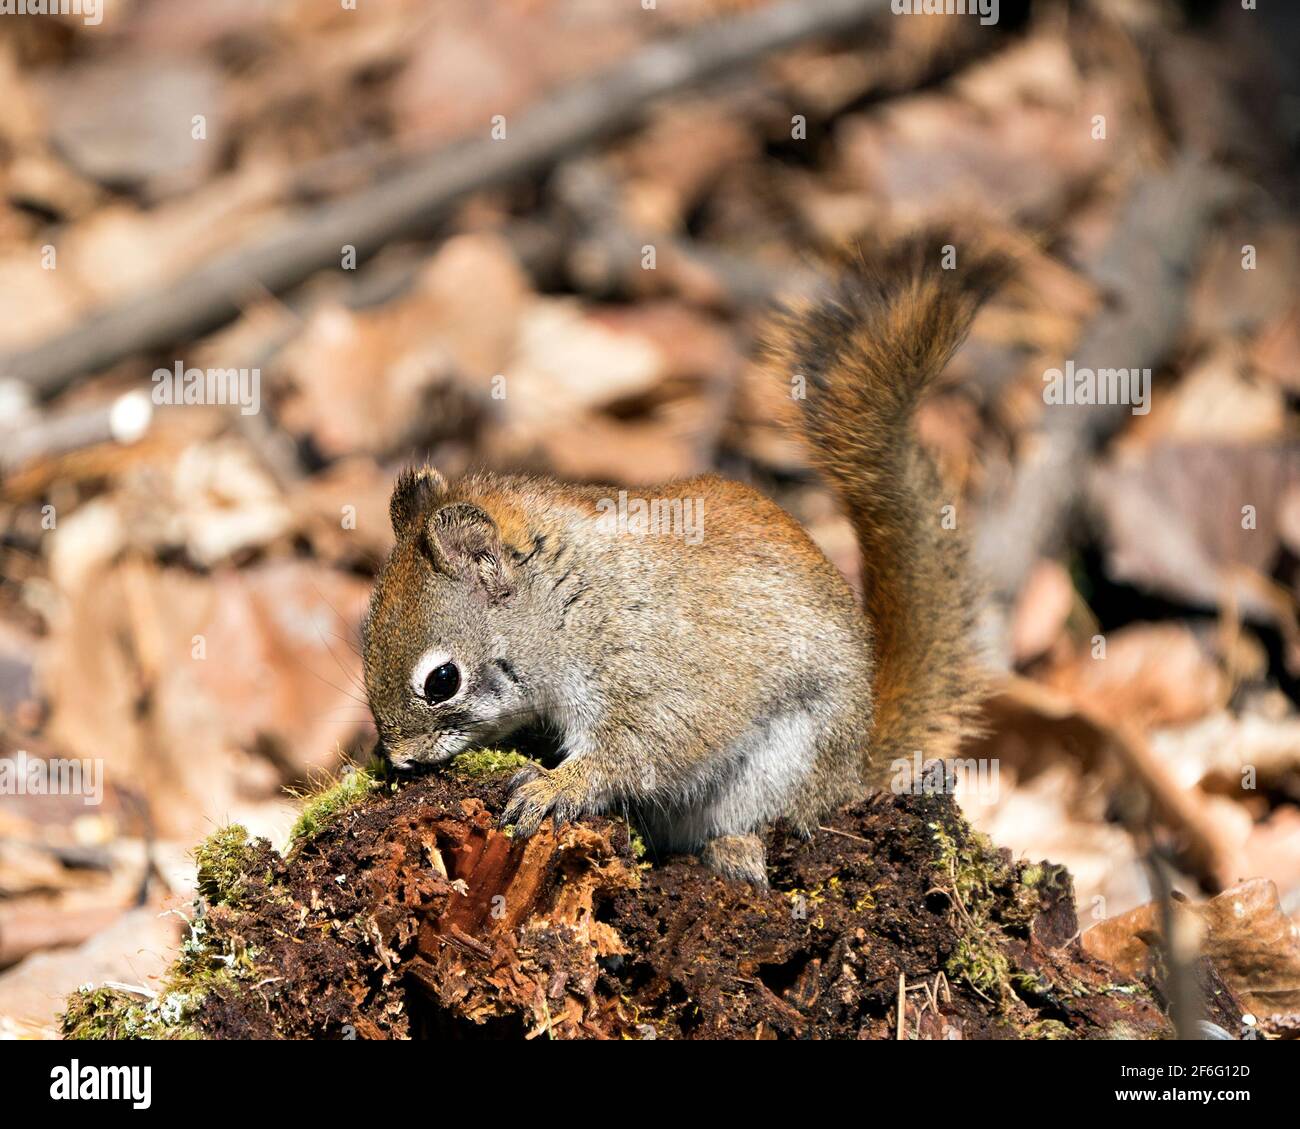 Nahaufnahme des Eichhörnchen-Profils, das auf einem Moosstumpf im Wald sitzt und buschigen Schwanz, braunes Fell und Pfoten mit unscharfem Hintergrund in seinem Lebensraum zeigt. Stockfoto